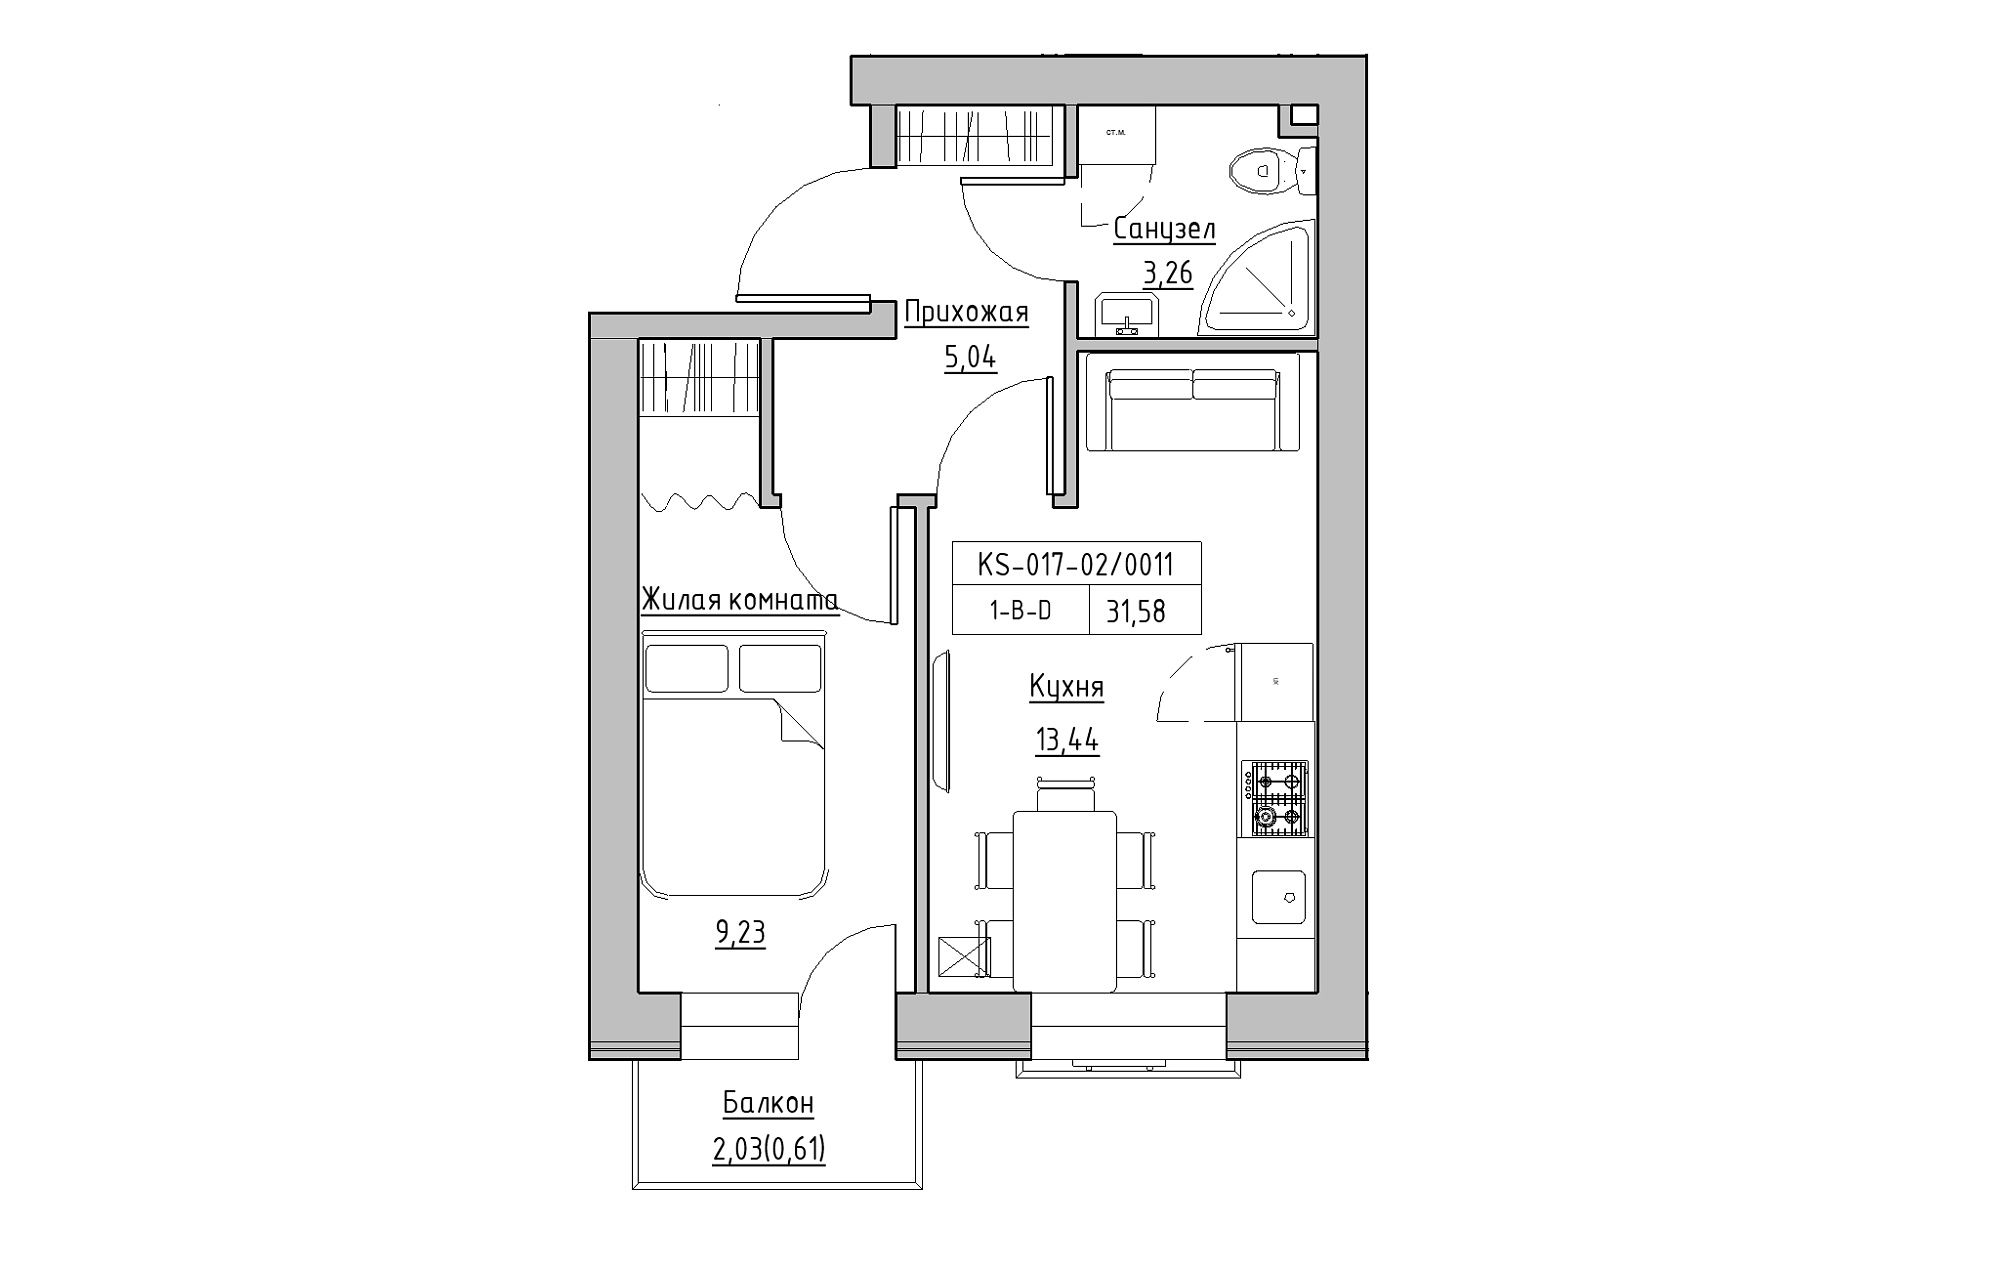 Планировка 1-к квартира площей 31.58м2, KS-017-02/0011.